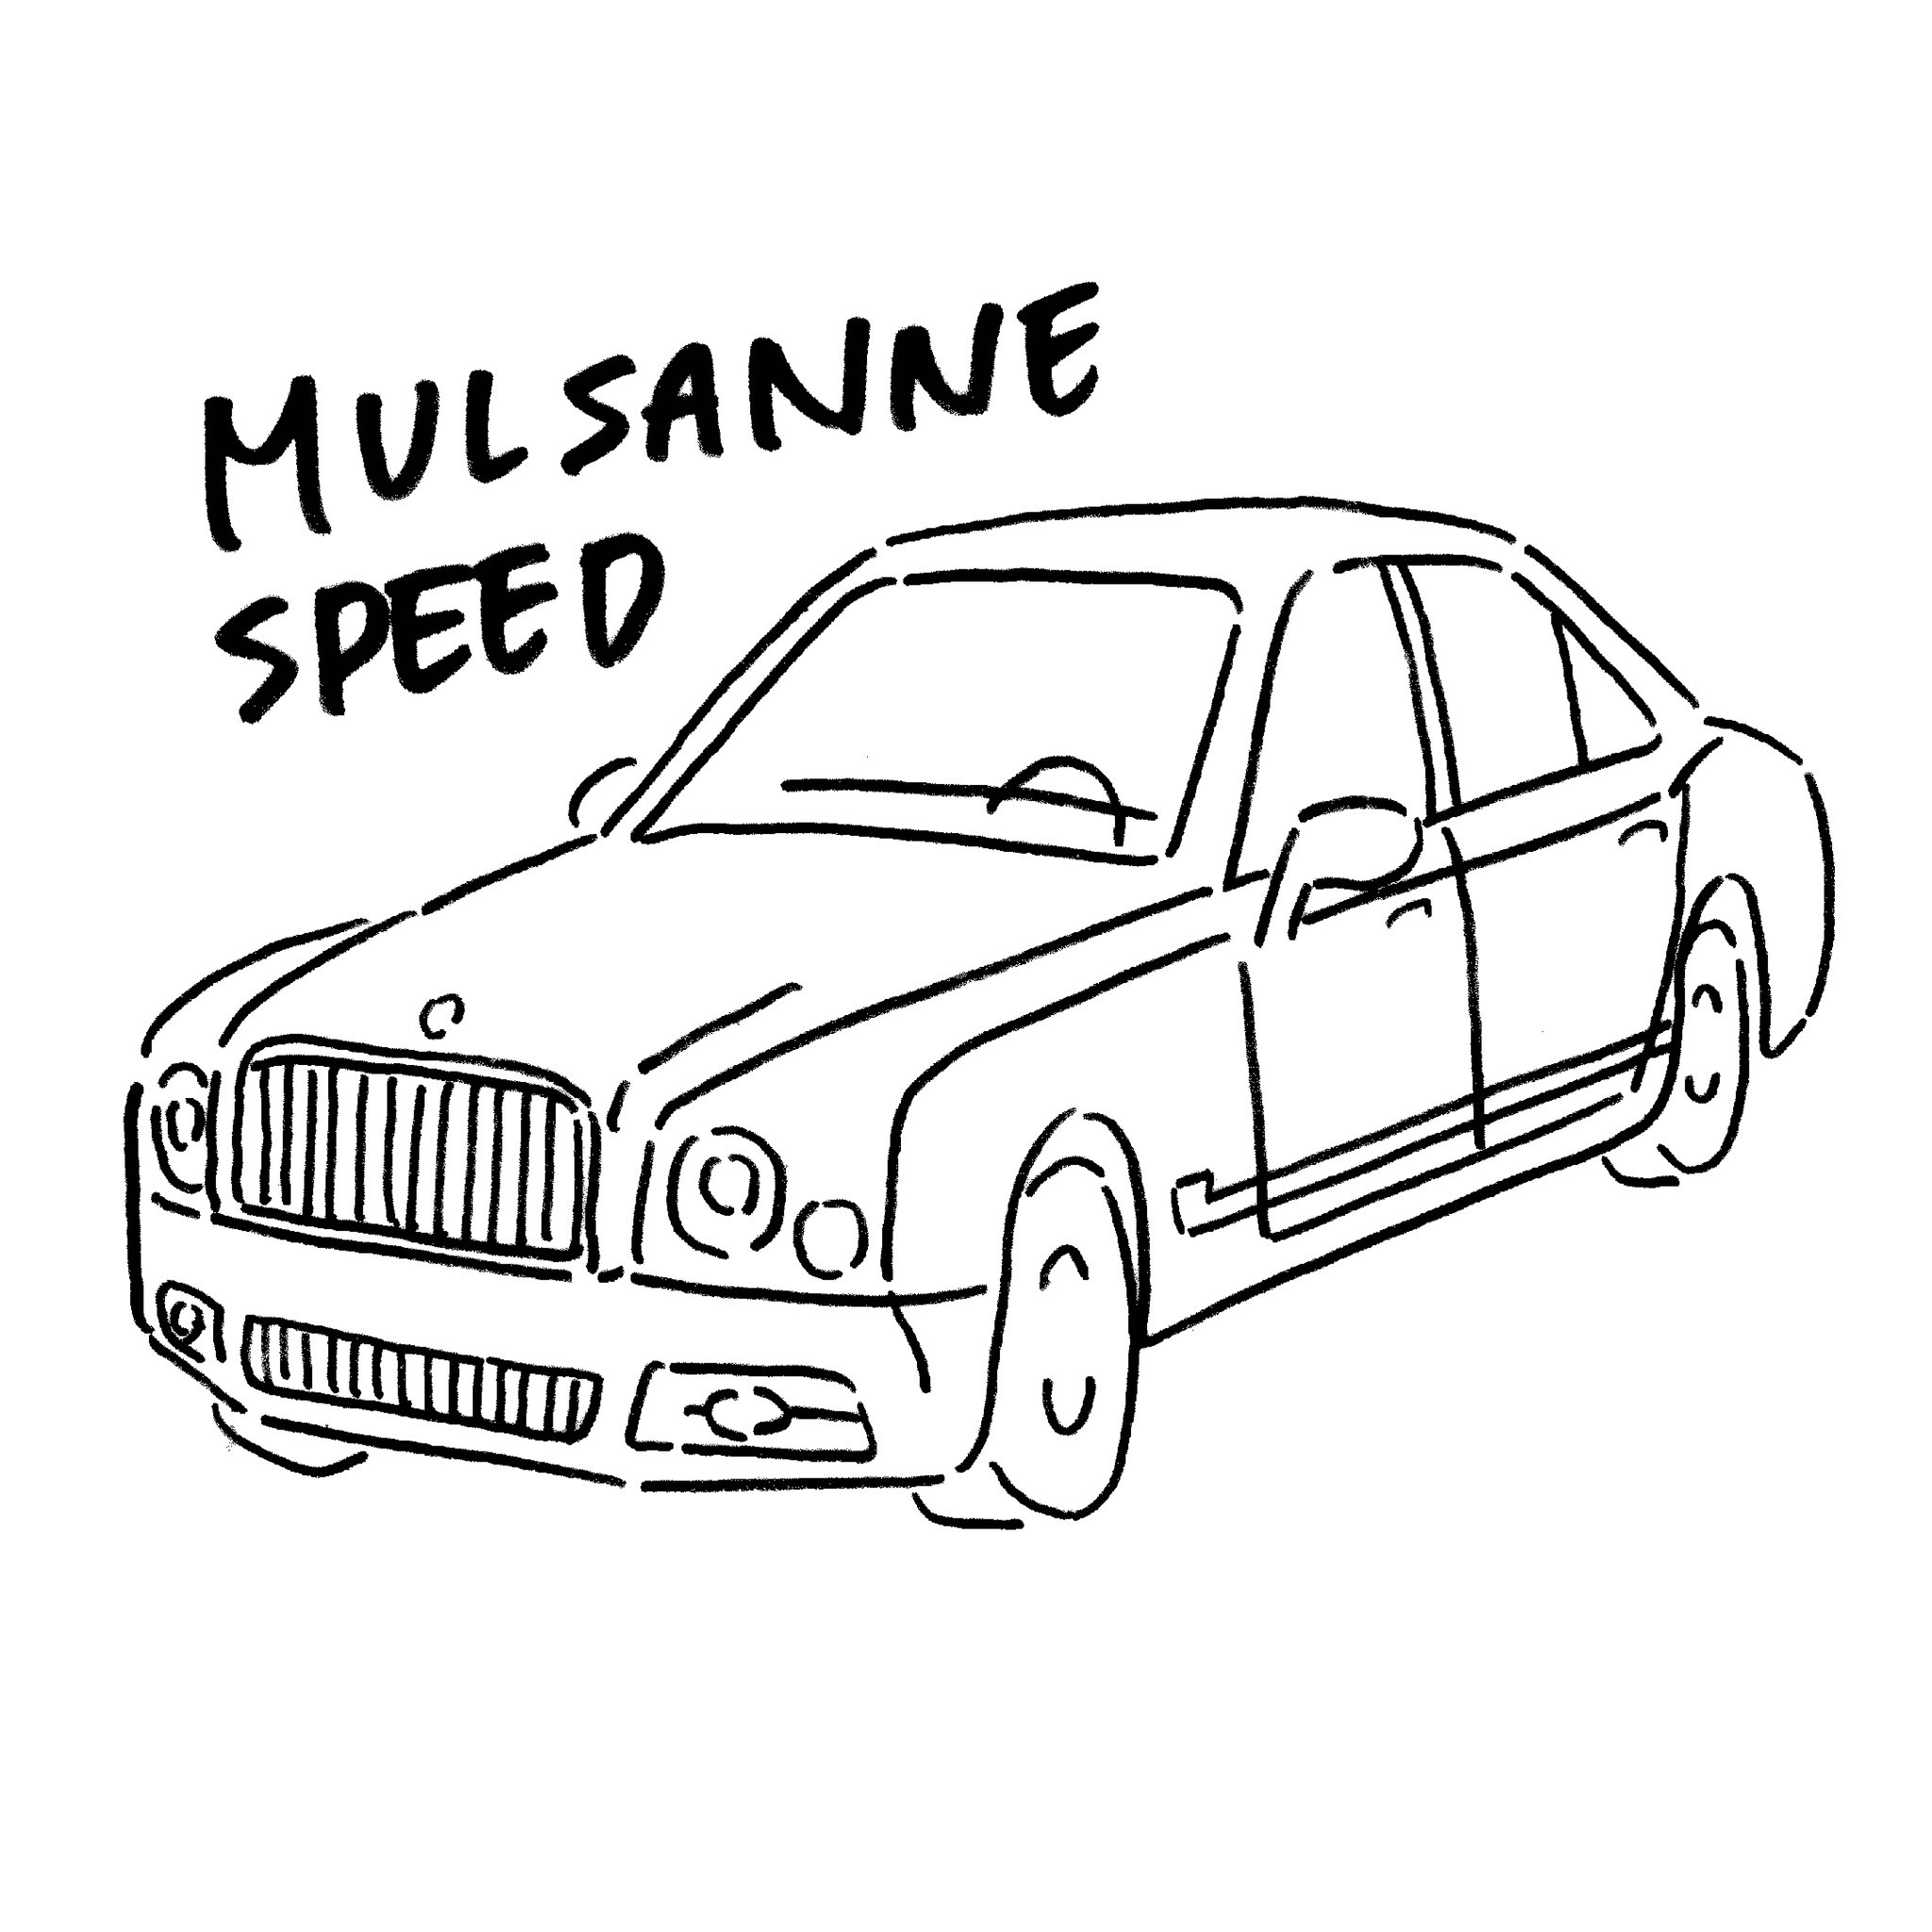 みけねこチカ 高級車を描いたんだ 見てくれ ついでに Rtで私を有名にしてください Mulsanne Mulsannespeed Car くるま 車 かわいい かわいい車 Illust イラスト 手描きイラスト 絵描きさんとつながりたい 絵師さんと繋がりたい